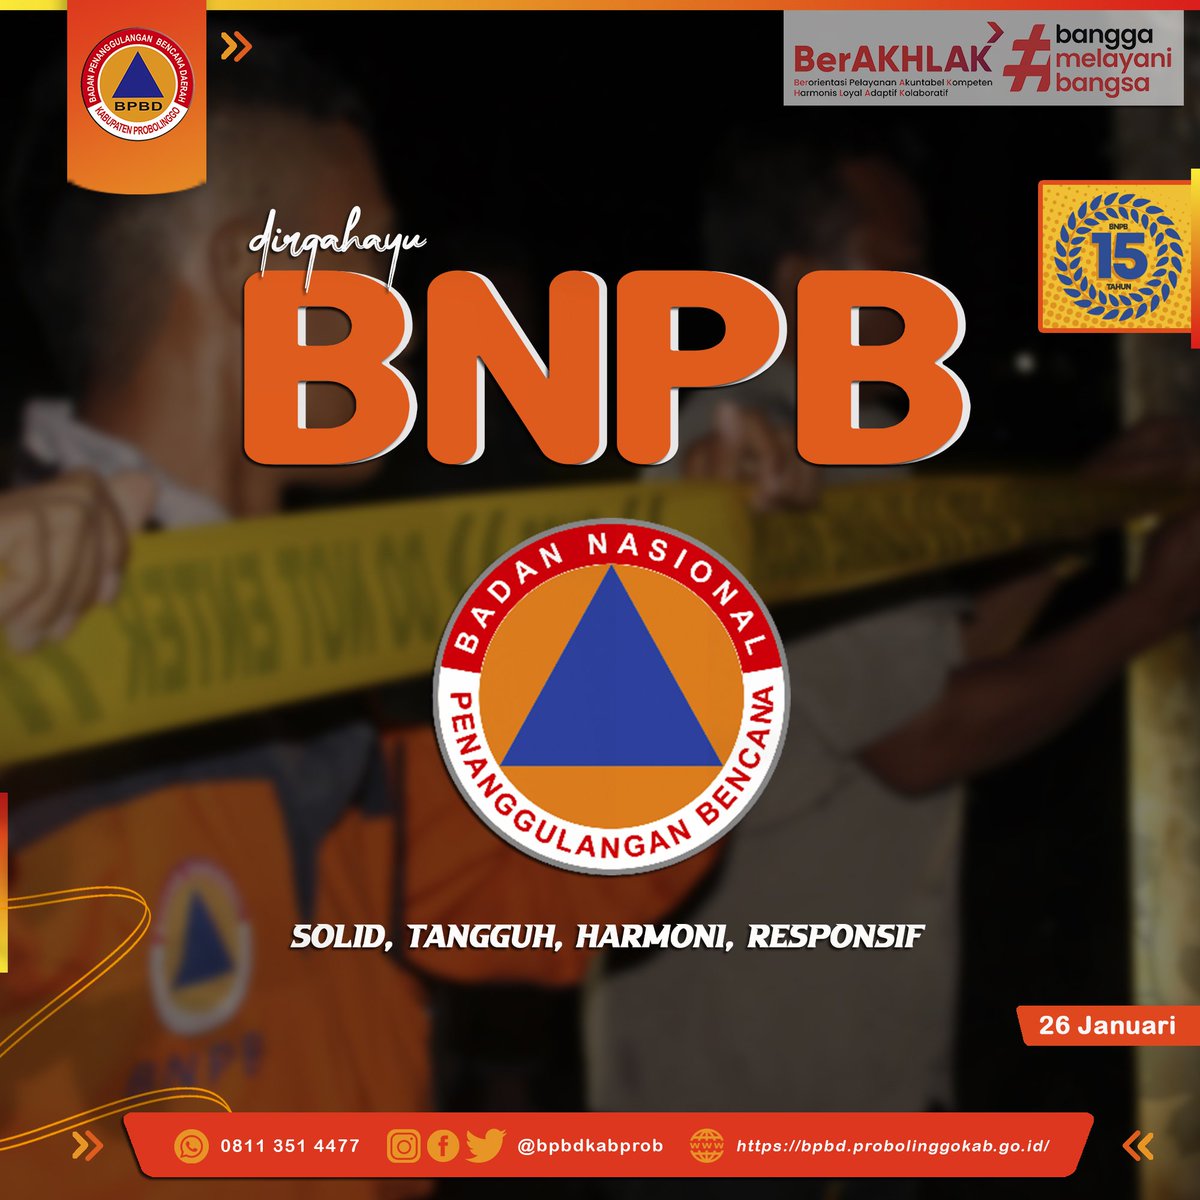 Selamat Ulang Tahun BNPB! Mari Kita dukung BNPB semakin Solid, Tangguh, Harmoni dan Responsif dalam Penyelenggaraan Penanggulangan Bencana. 

#hutbnpb 
#hutbnpb15
#bnpb